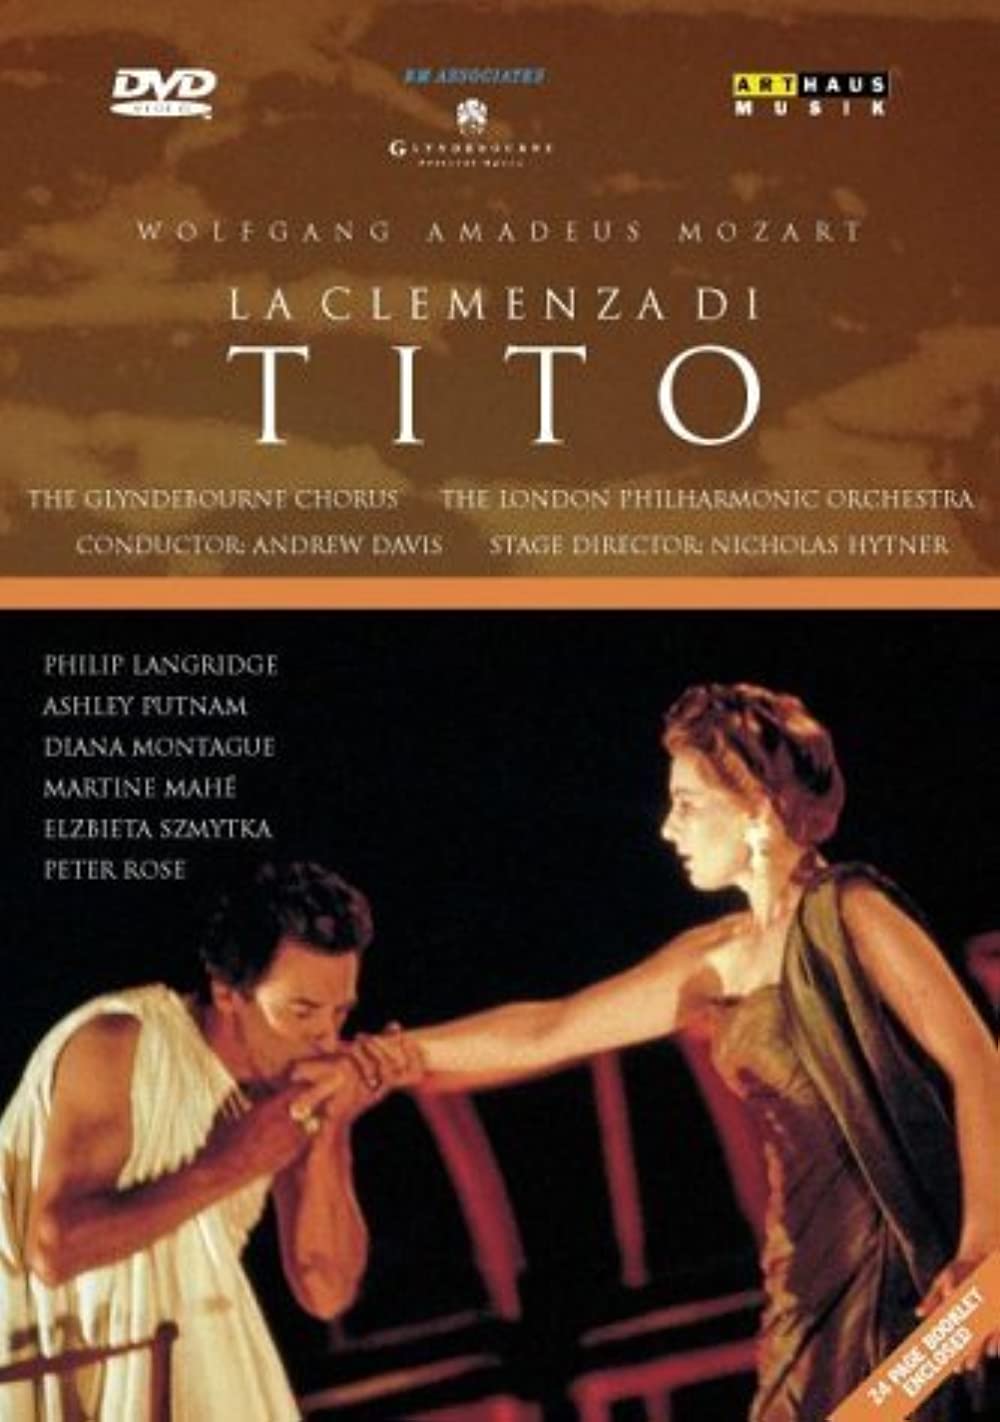 Filmbeschreibung zu La clemenza di tito (OV)